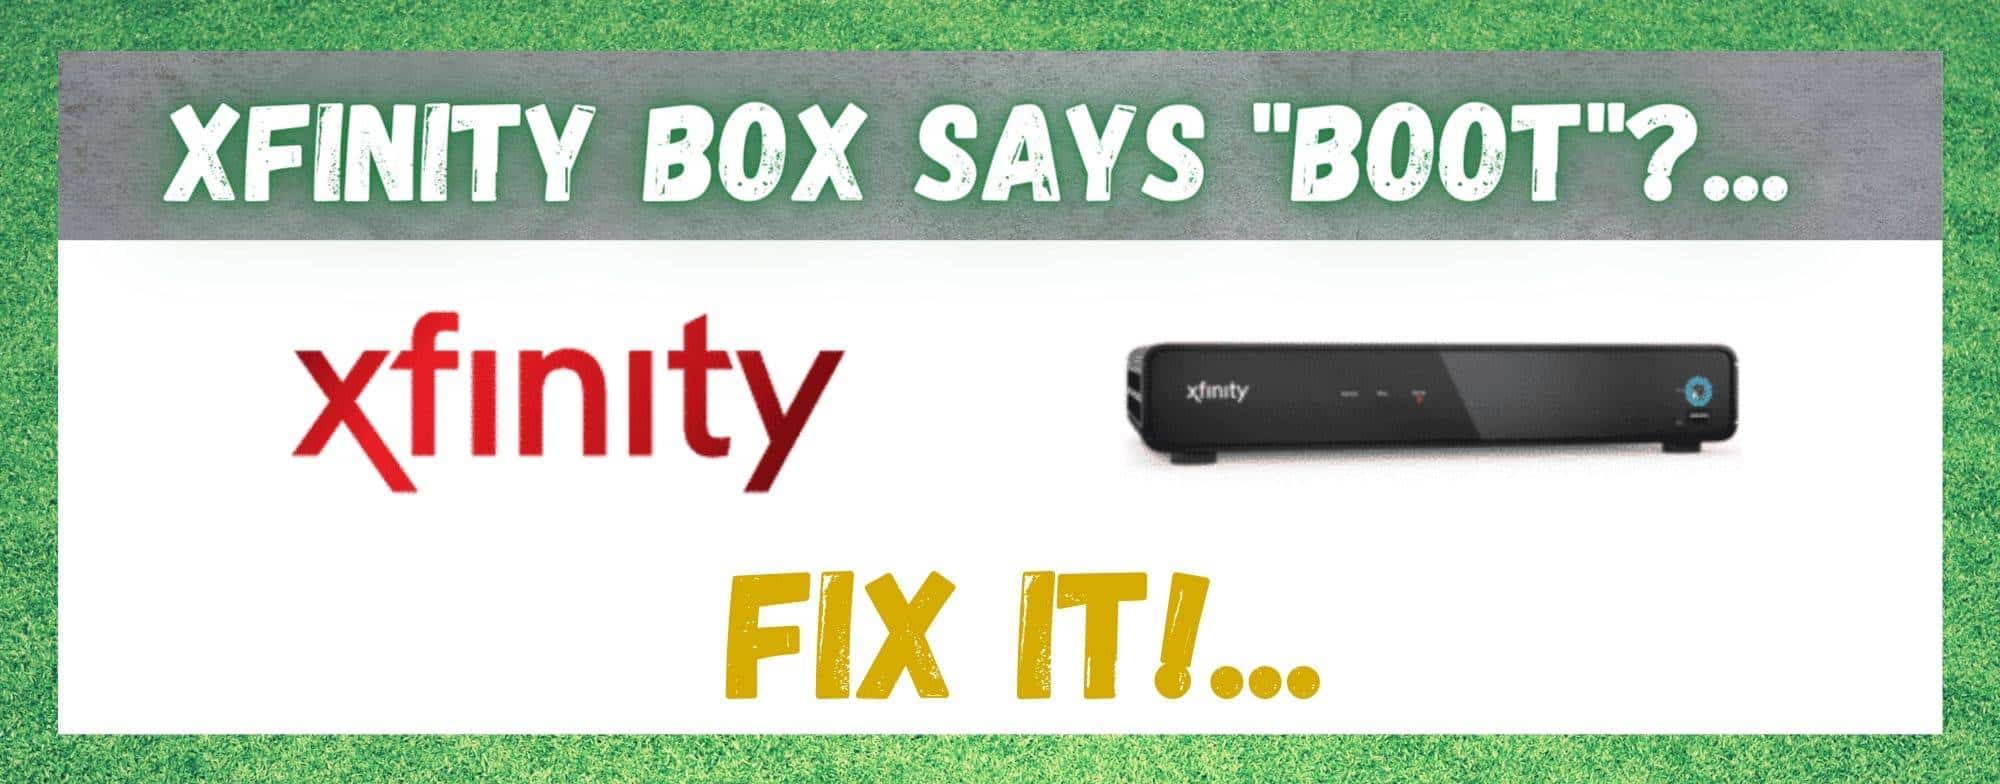 Xfinity Box Dice Boot: 4 Maneras de Solucionar